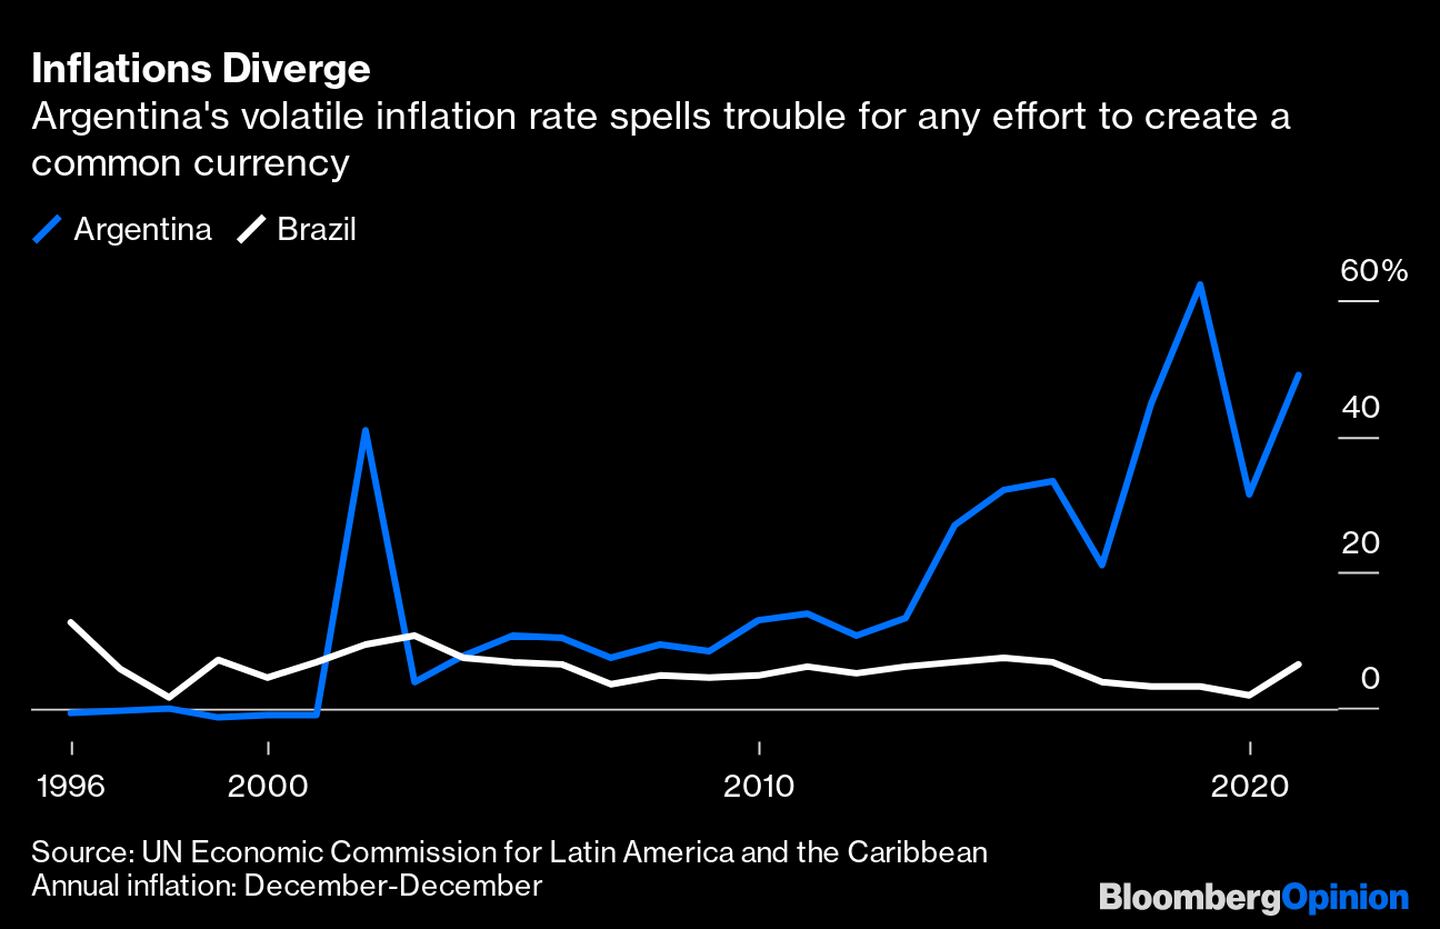 La volátil tasa de inflación de Argentina dificulta cualquier intento de crear una moneda común. dfd